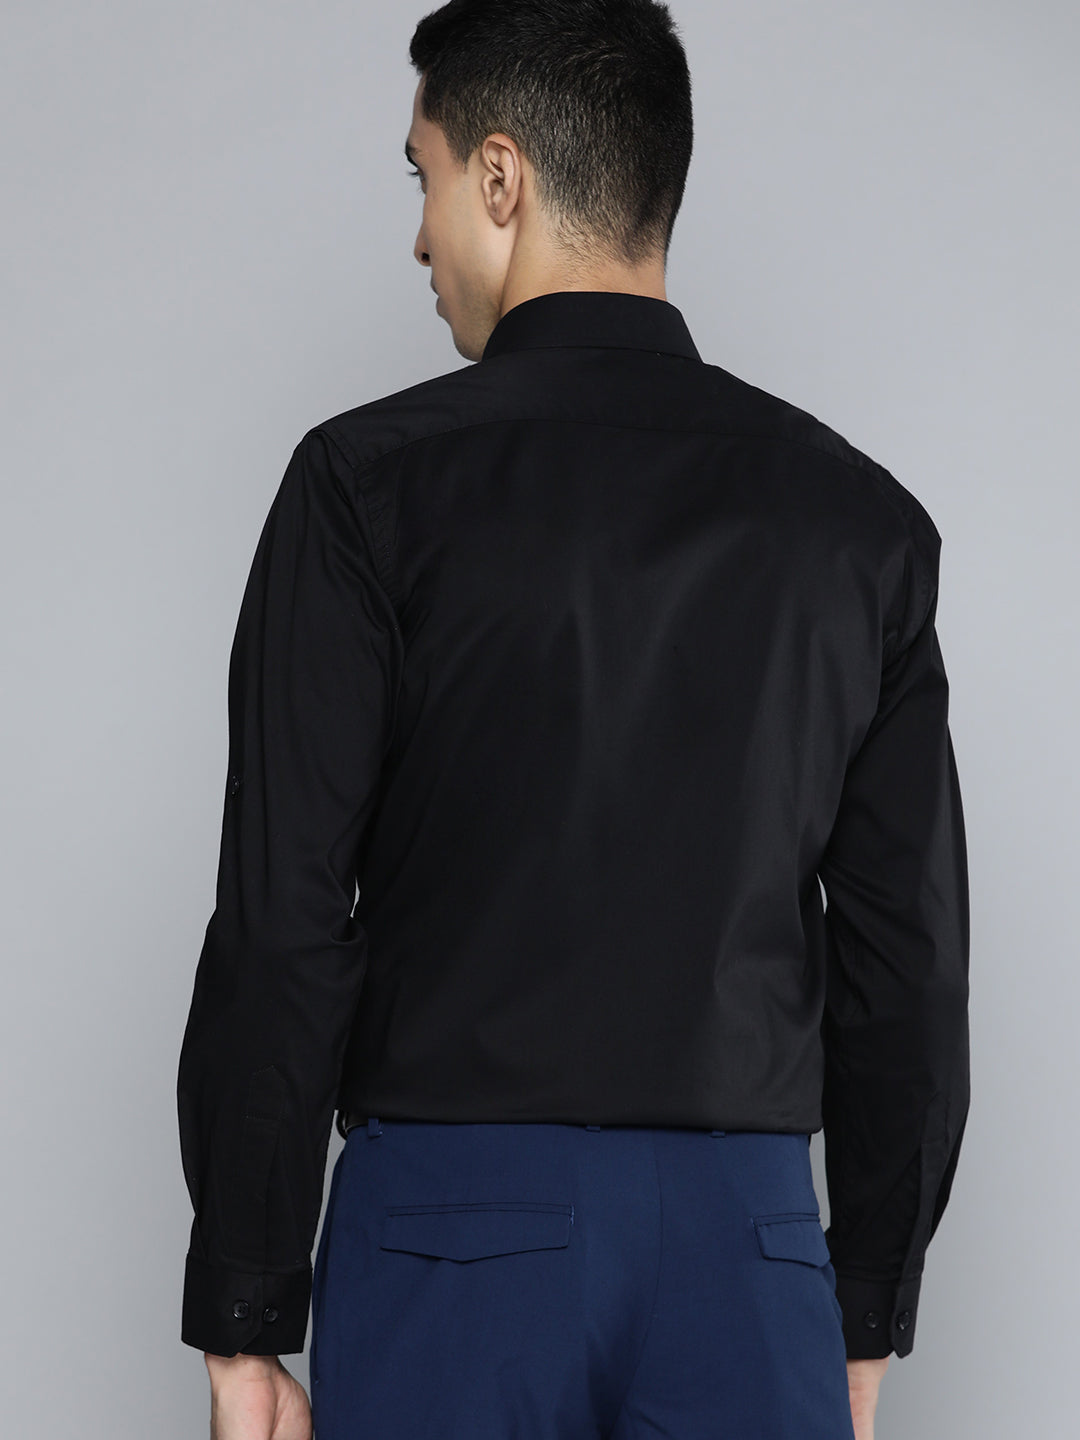 DENNISON Men Black Solid Smart Slim Fit Stretchable Lycra Formal Shirt